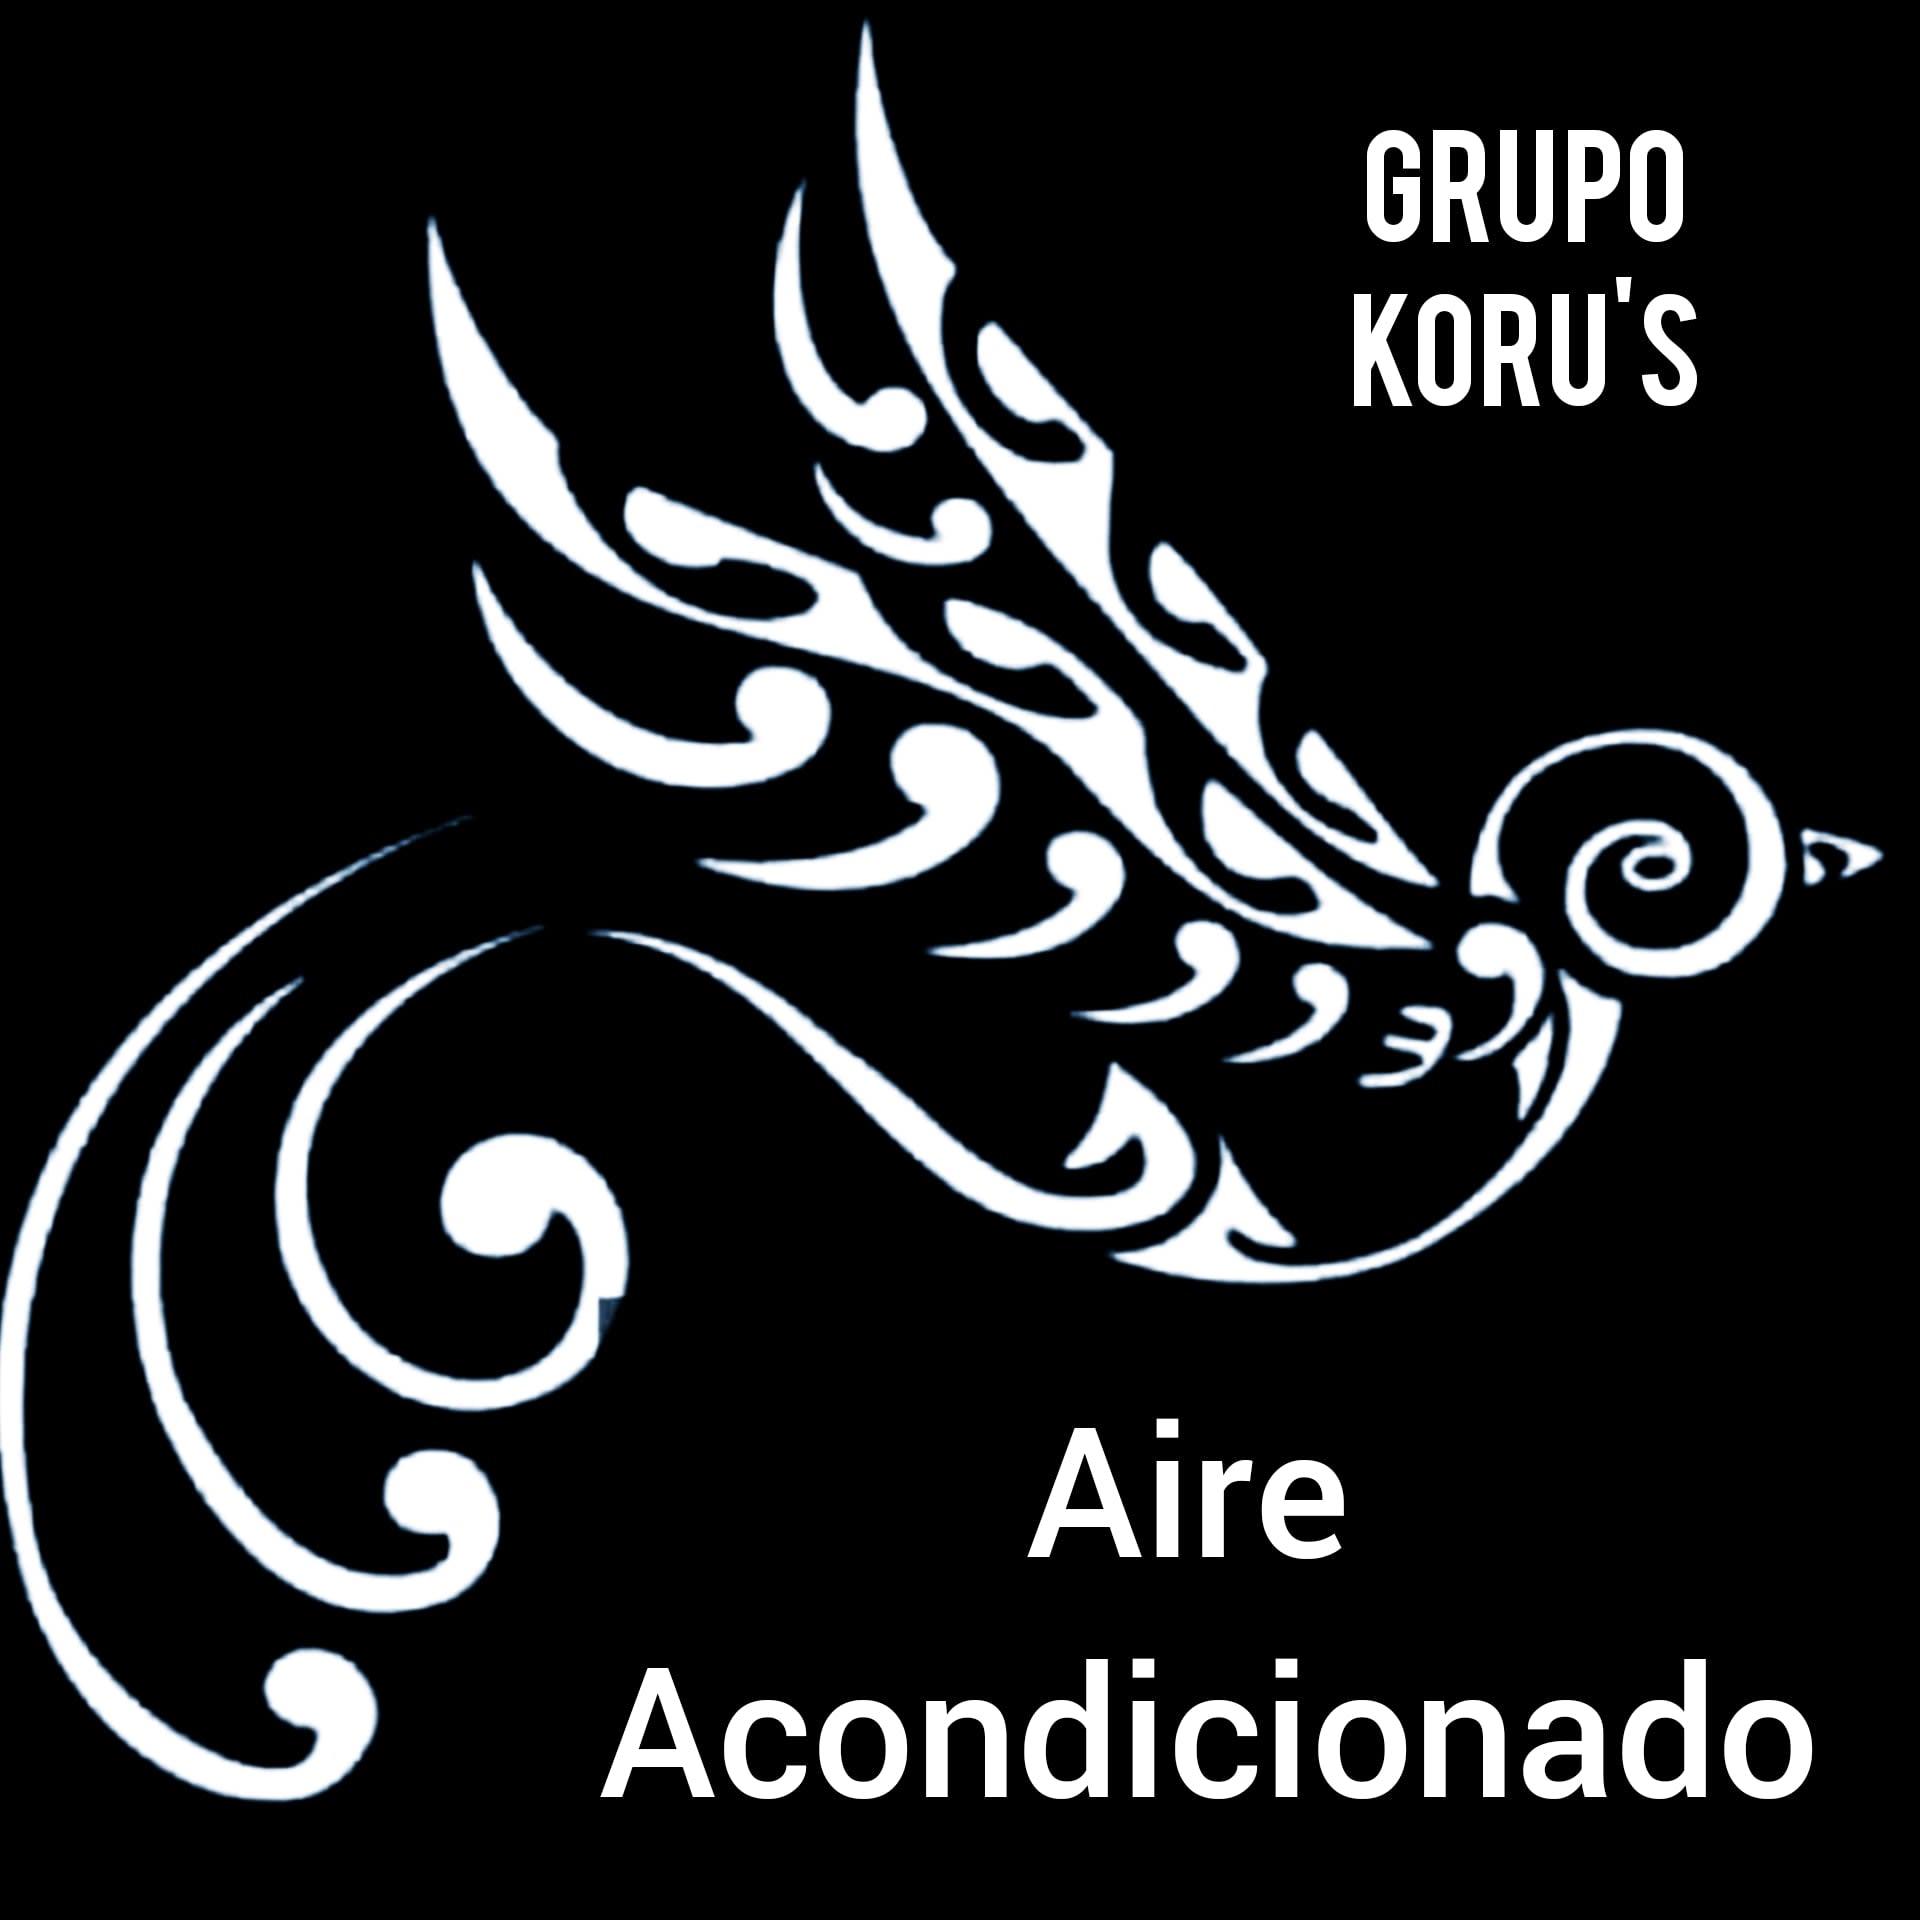 Grupo Koru's